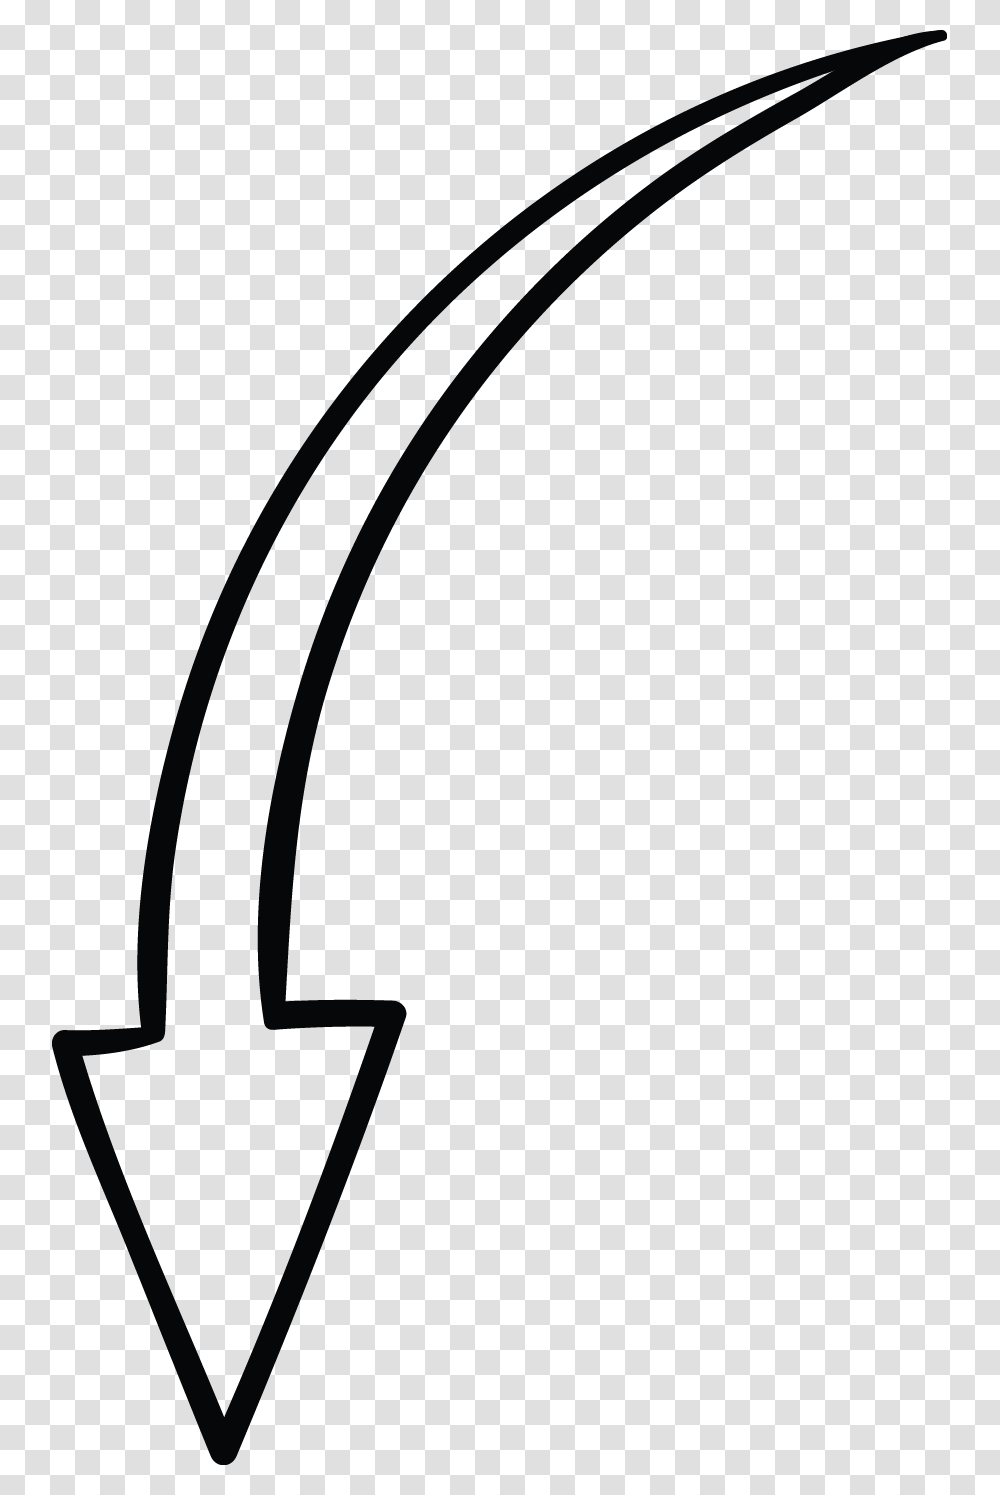 White Doodle Arrow, Tool, Soil, Hoe, Trowel Transparent Png